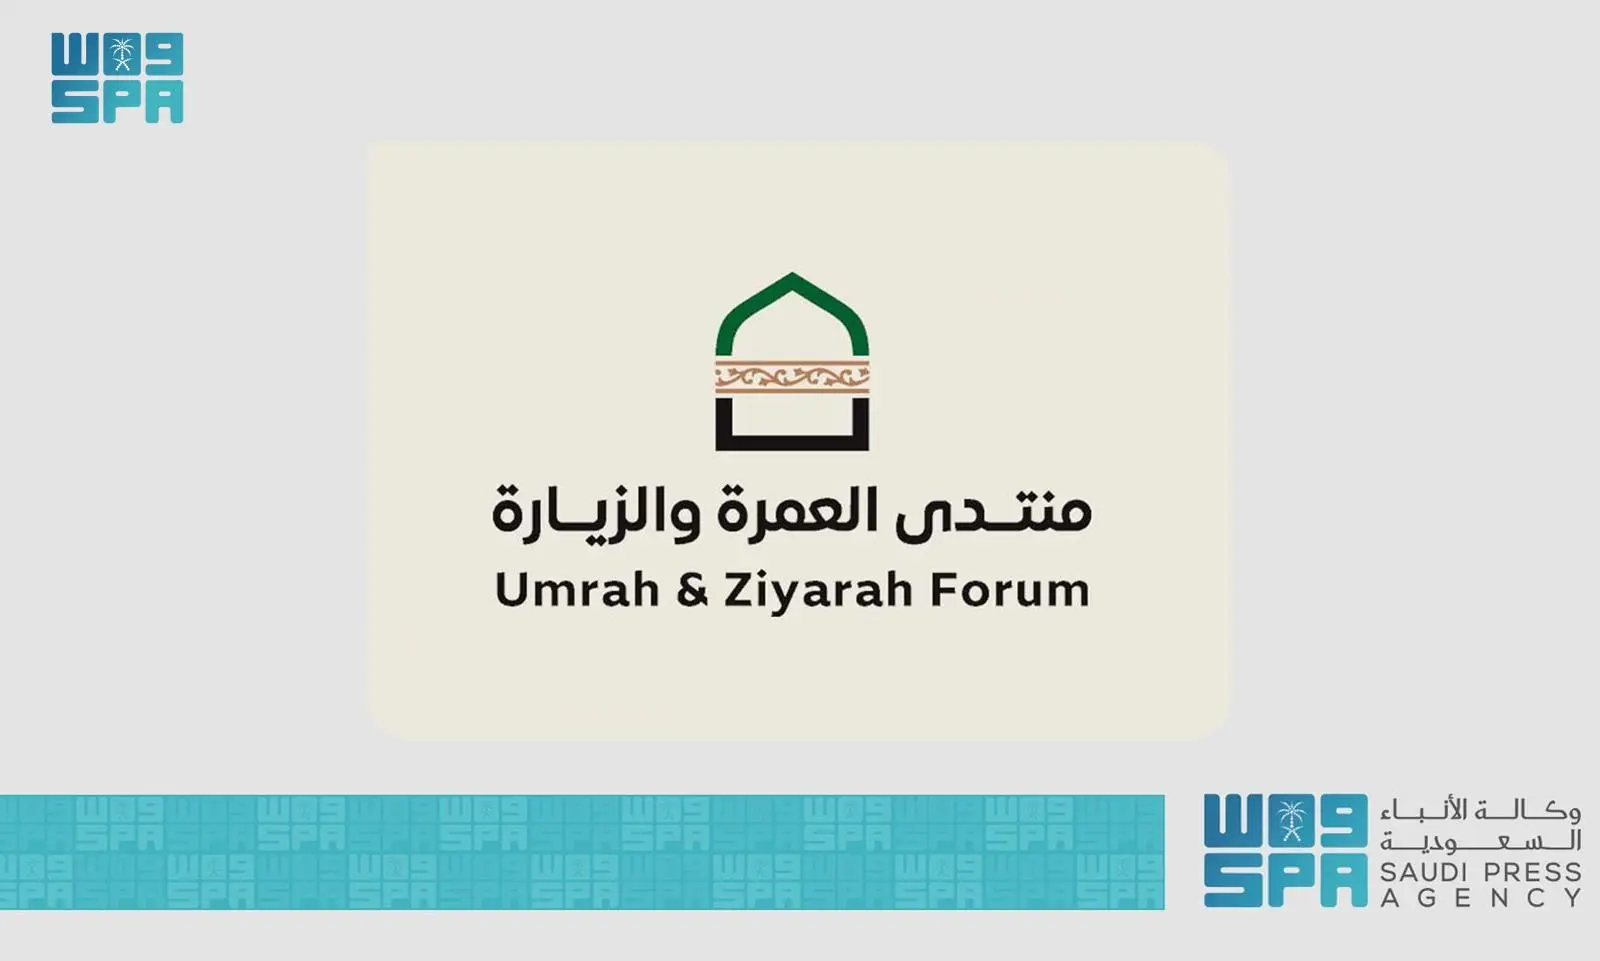 وزارة الحج والعمرة تنظم "منتدى العمرة والزيارة" في نسخته الأولى بالمدي…